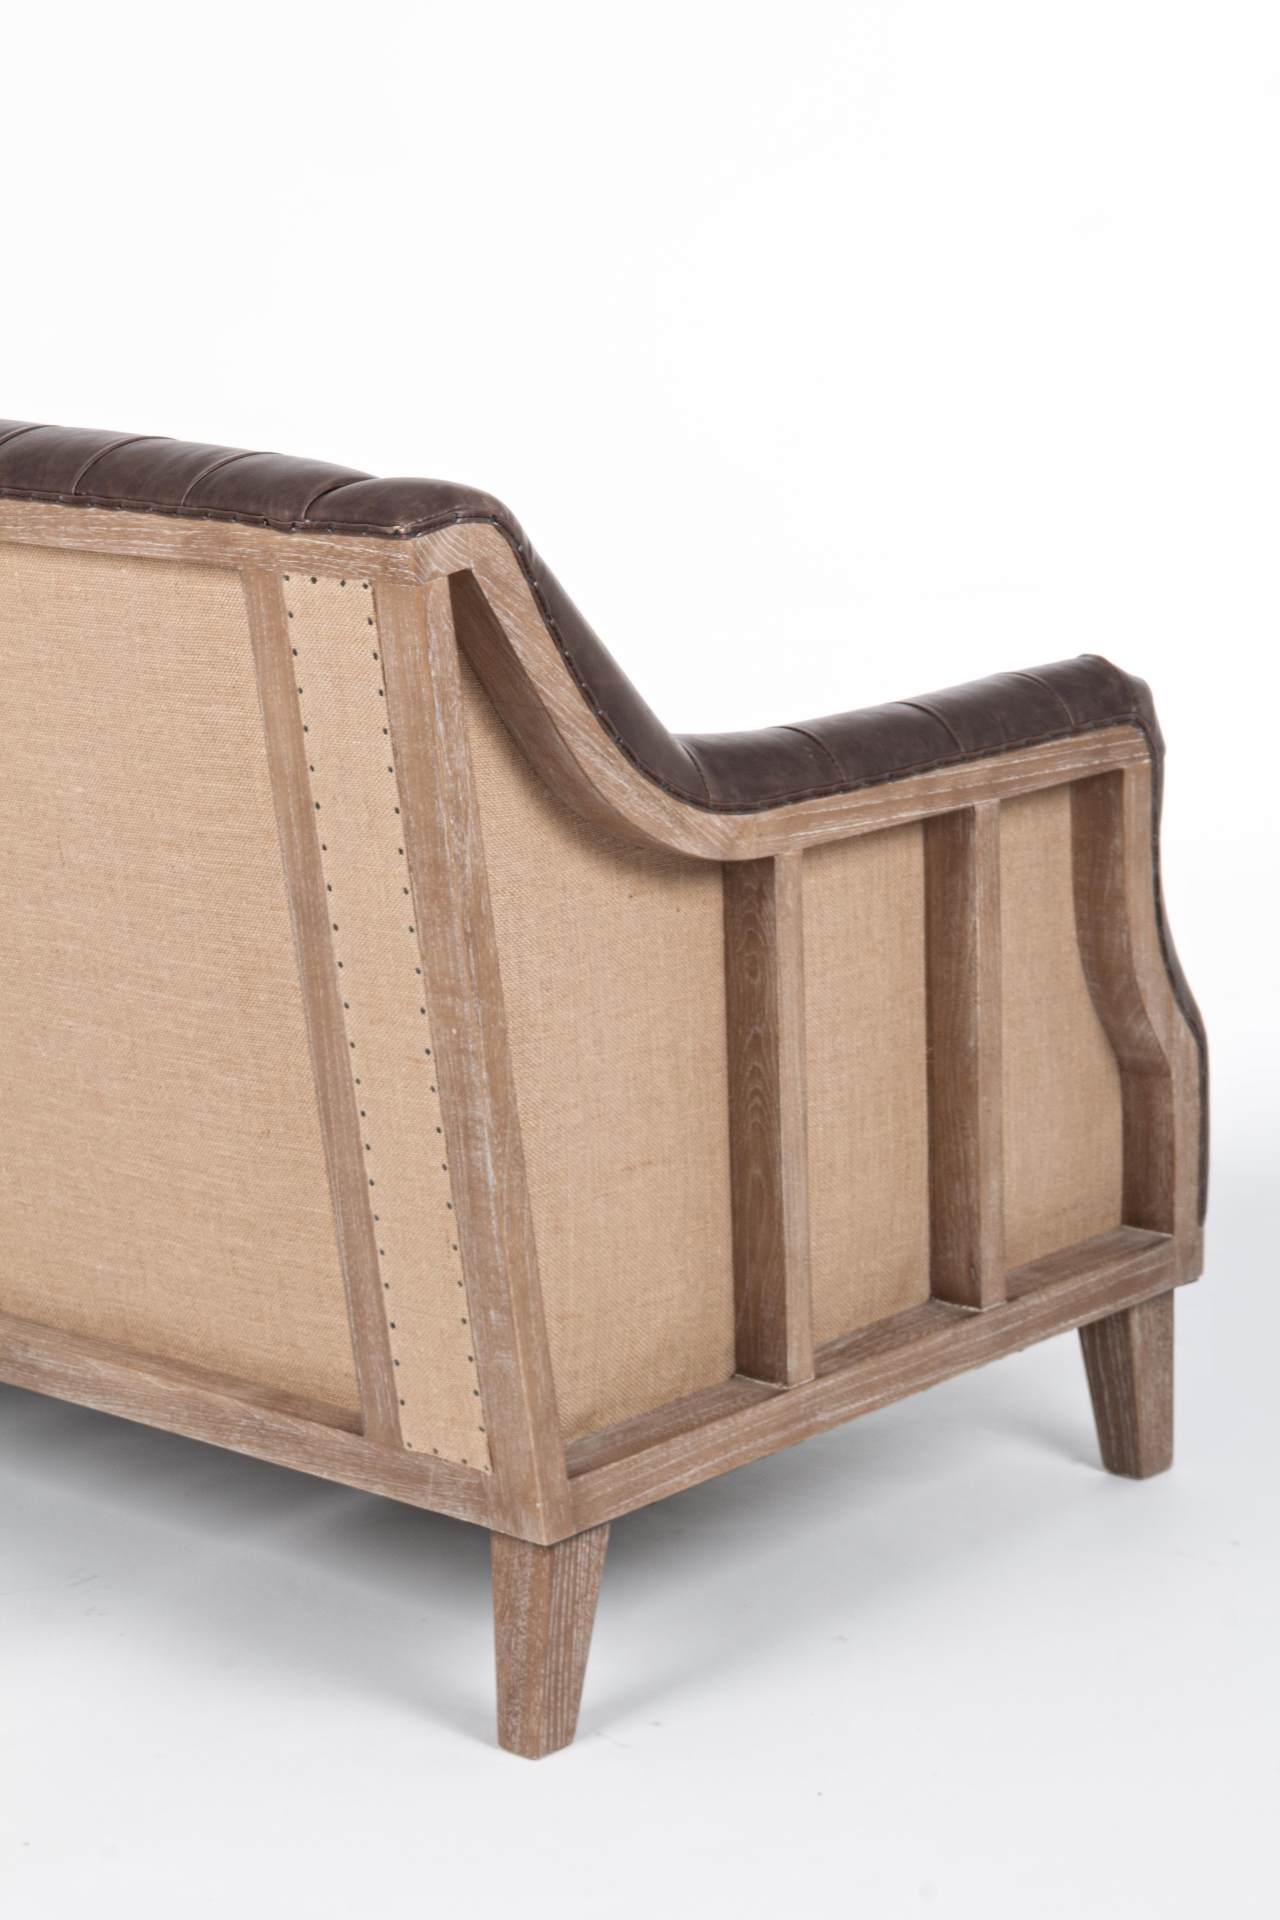 Das Sofa Raymond überzeugt mit seinem klassischen Design. Gefertigt wurde es aus Kunstleder, welches einen braunen Farbton besitzt. Das Gestell ist aus Eschenholz und hat eine natürliche Farbe. Das Sofa ist in der Ausführung als 2-Sitzer. Die Breite beträ